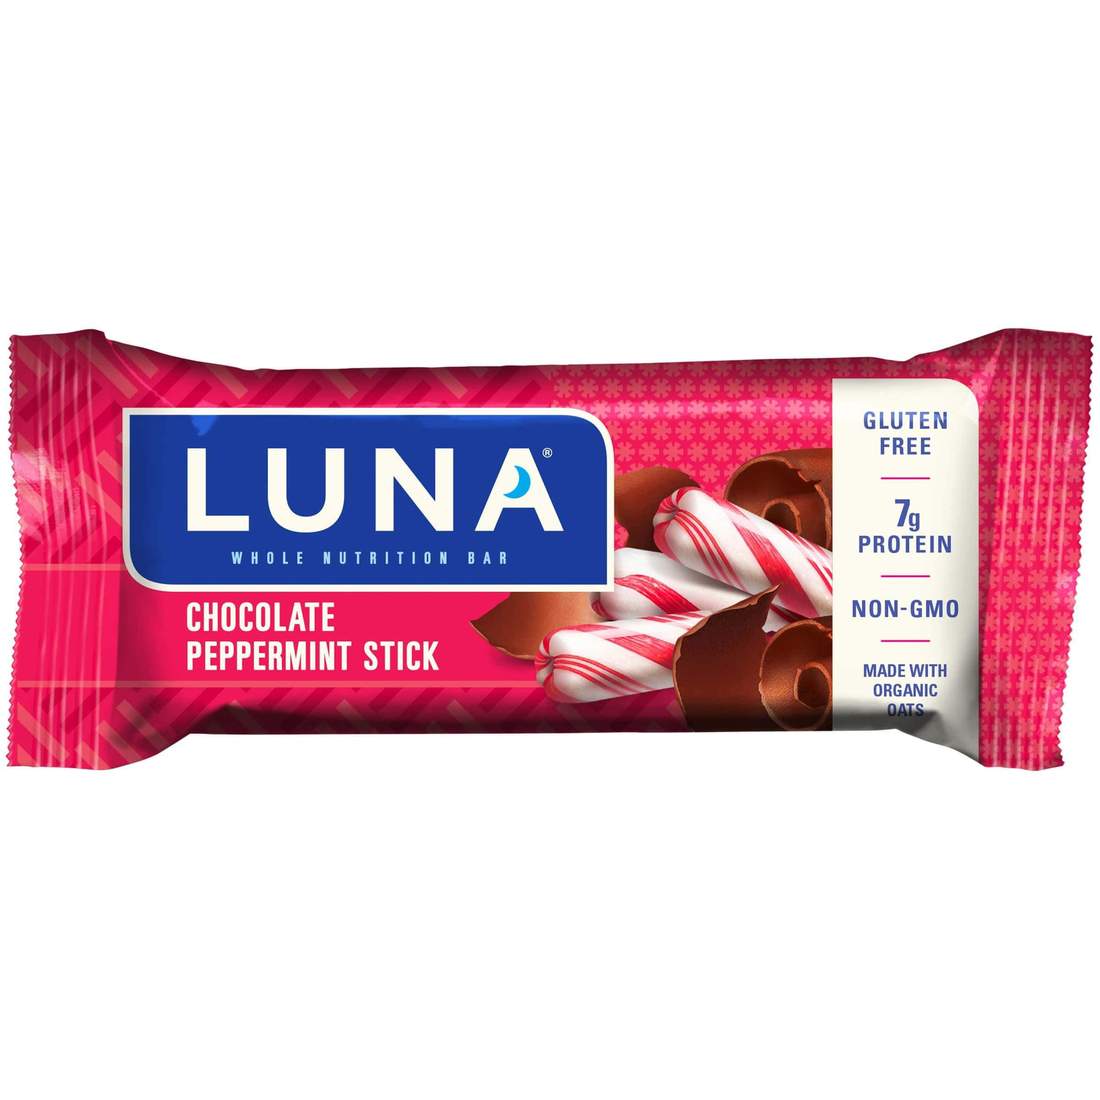 luna bar chocolate peppermint stick